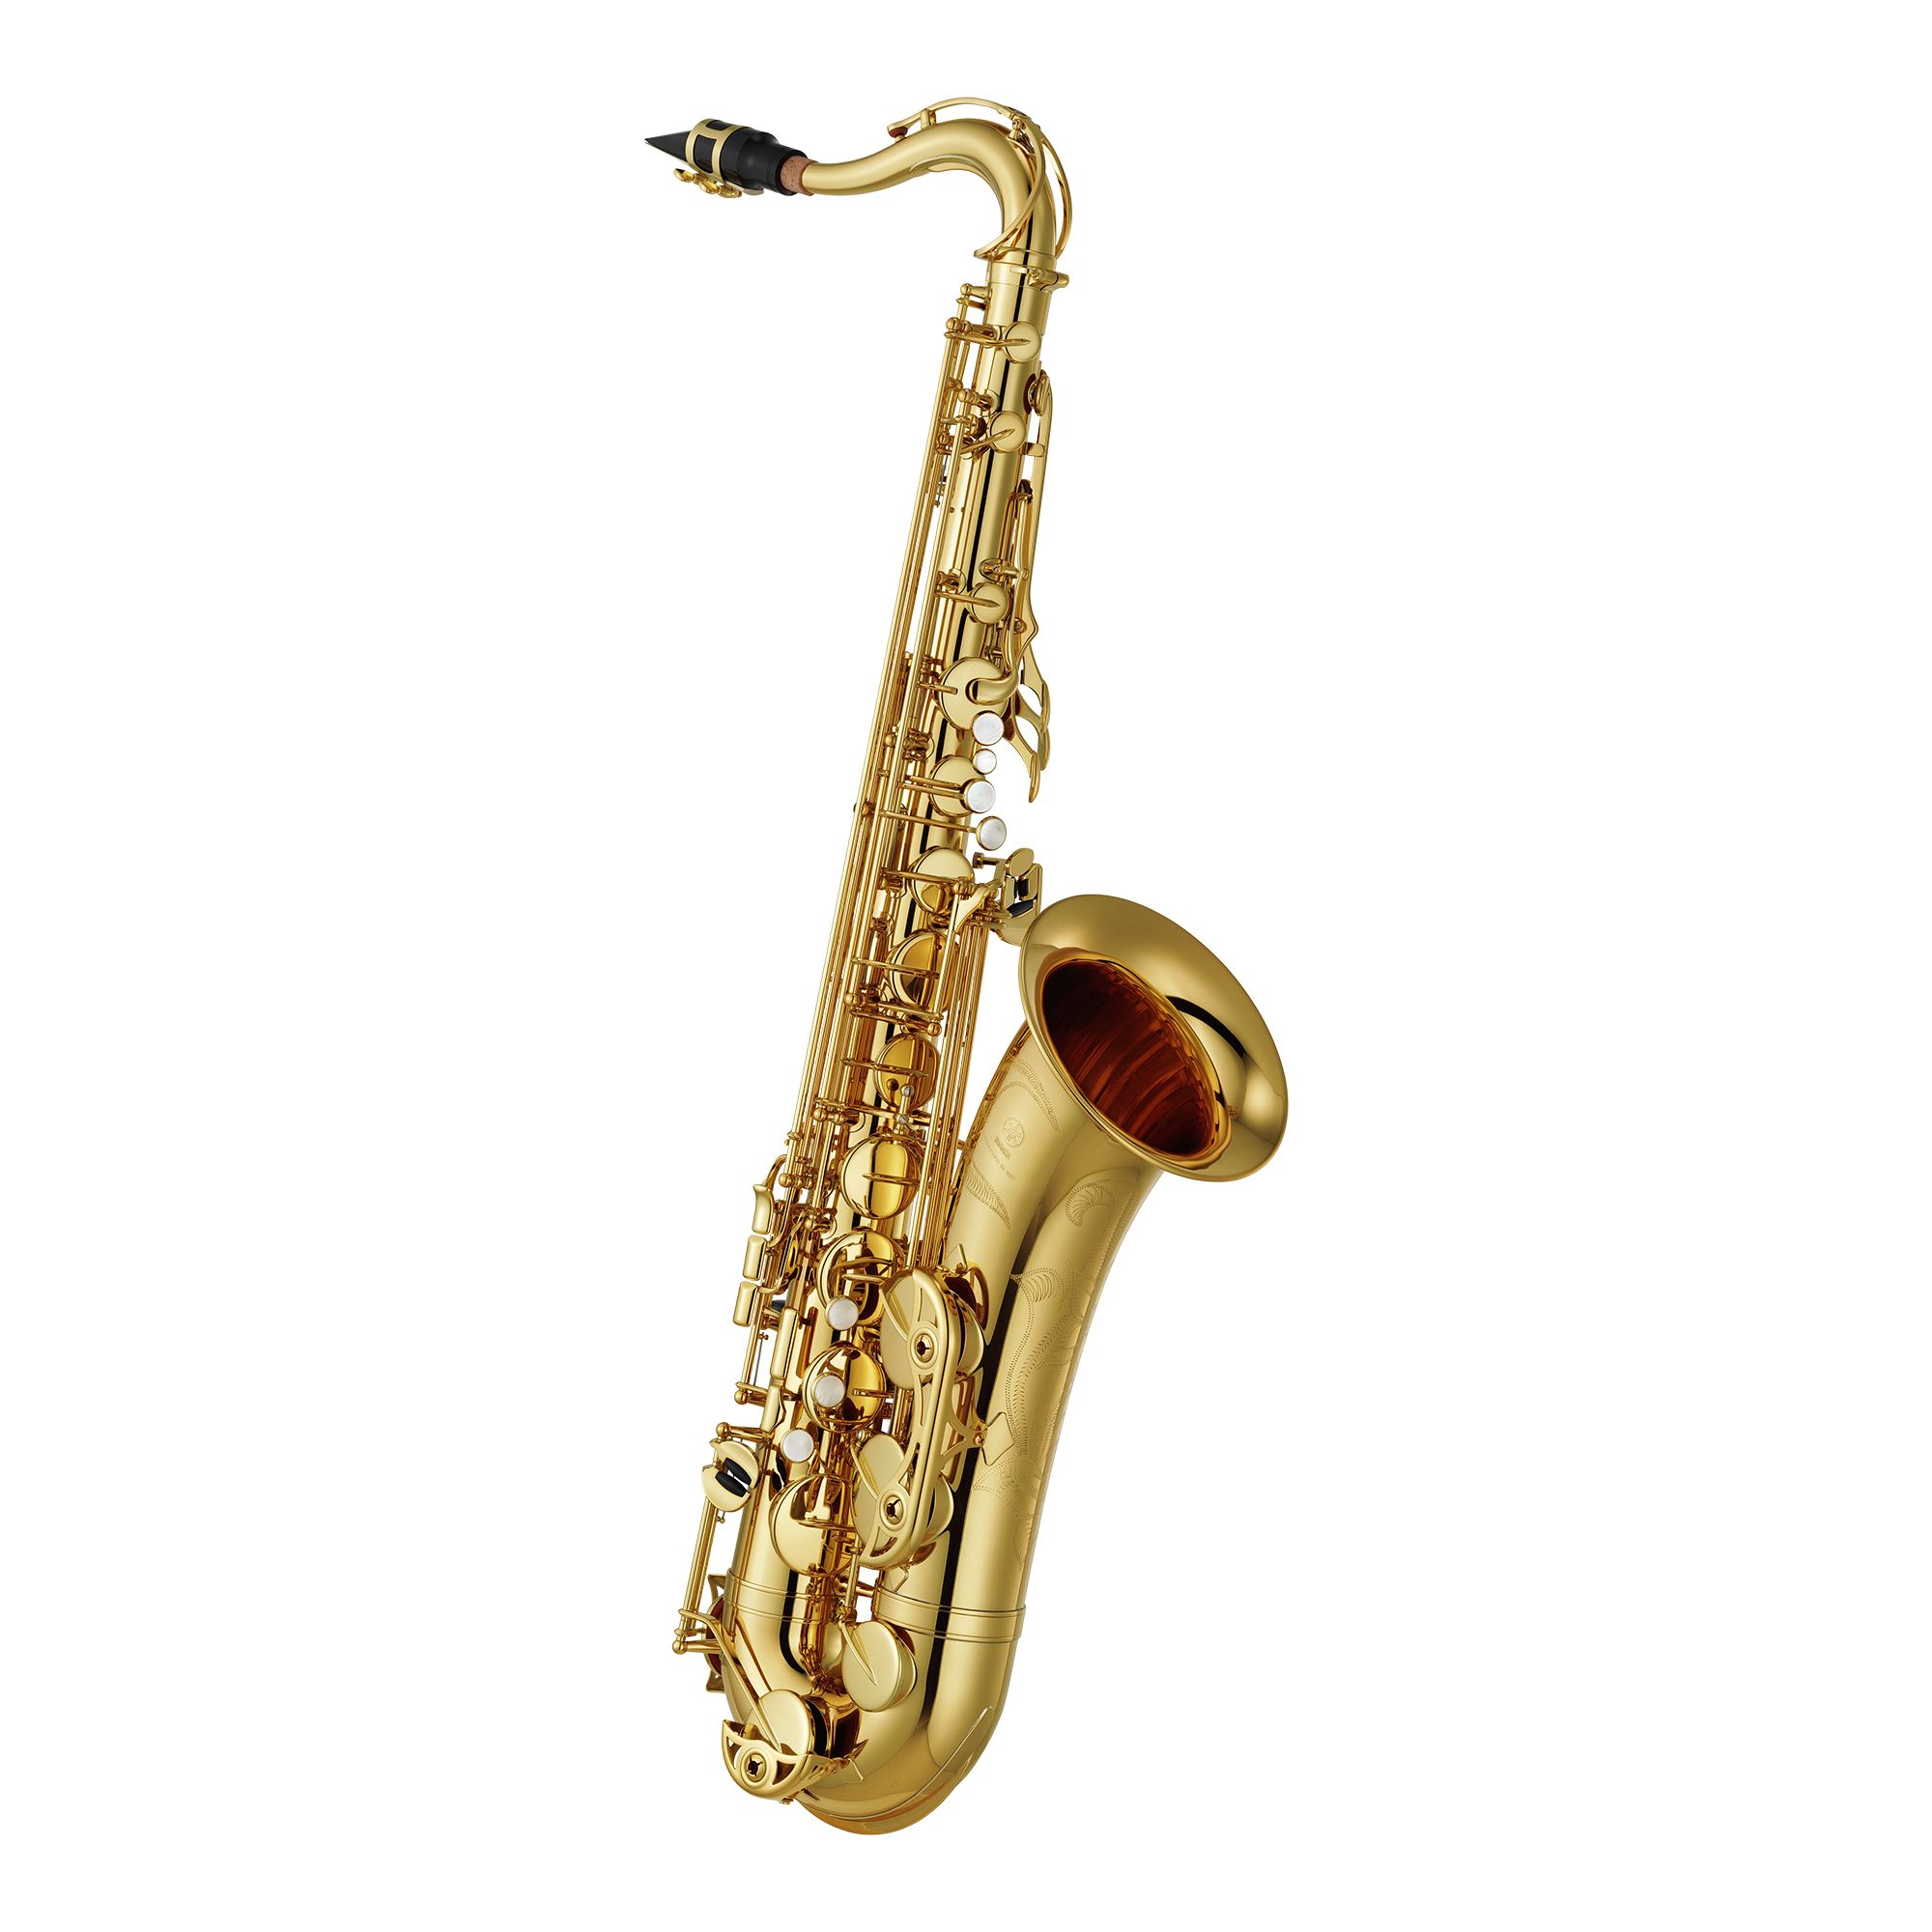 YTS-480 - Overview - Saxophones - Brass & Woodwinds - Musical 